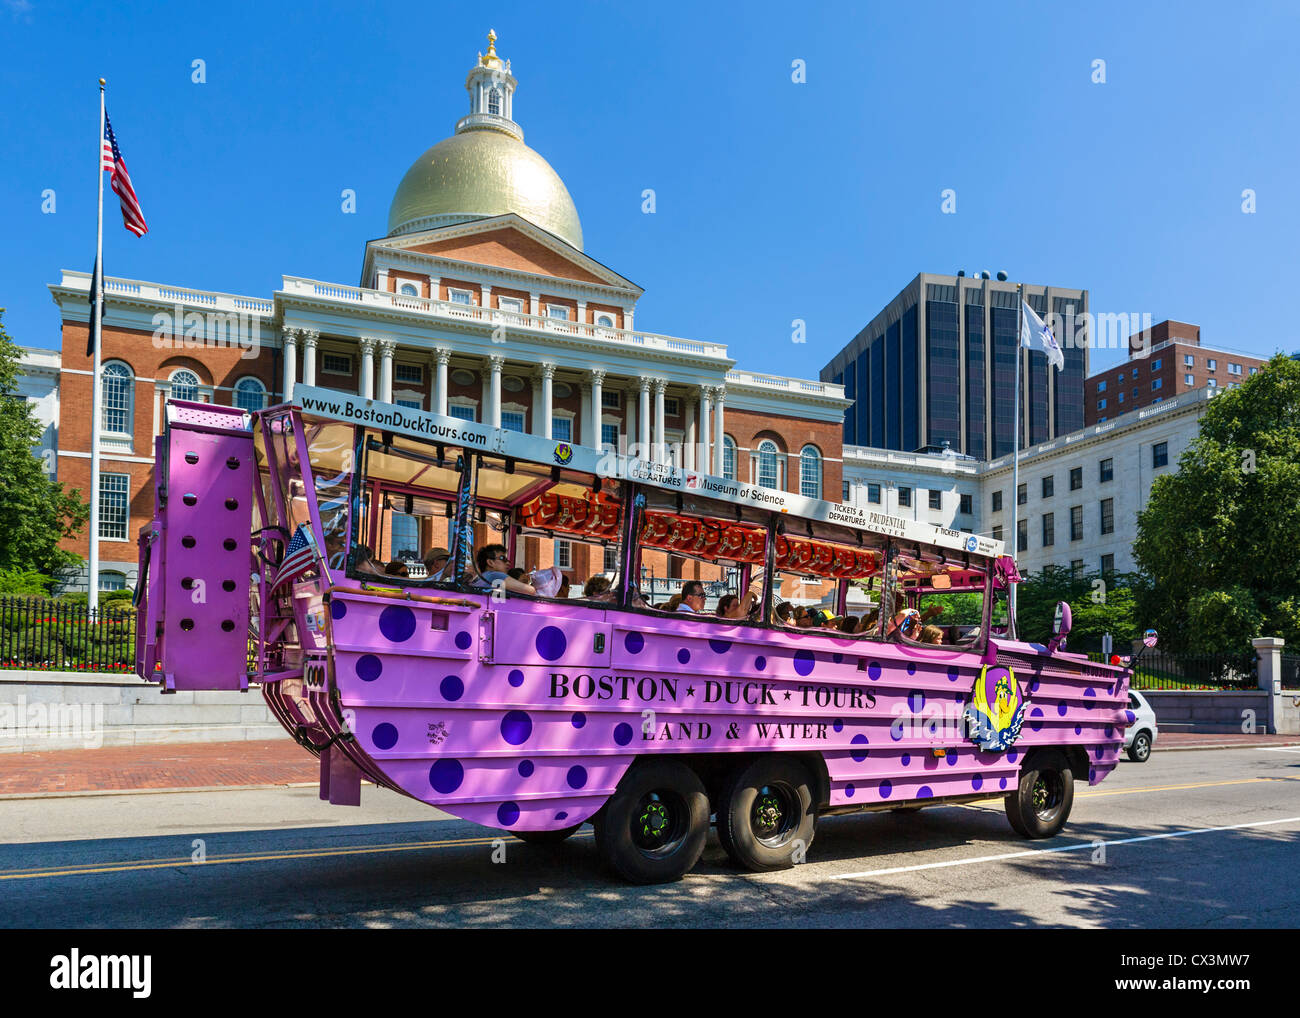 Boston Duck Tours excursion amphibie bus en face de la Massachusetts State House, Beacon Street, Boston, Massachusetts, USA Banque D'Images